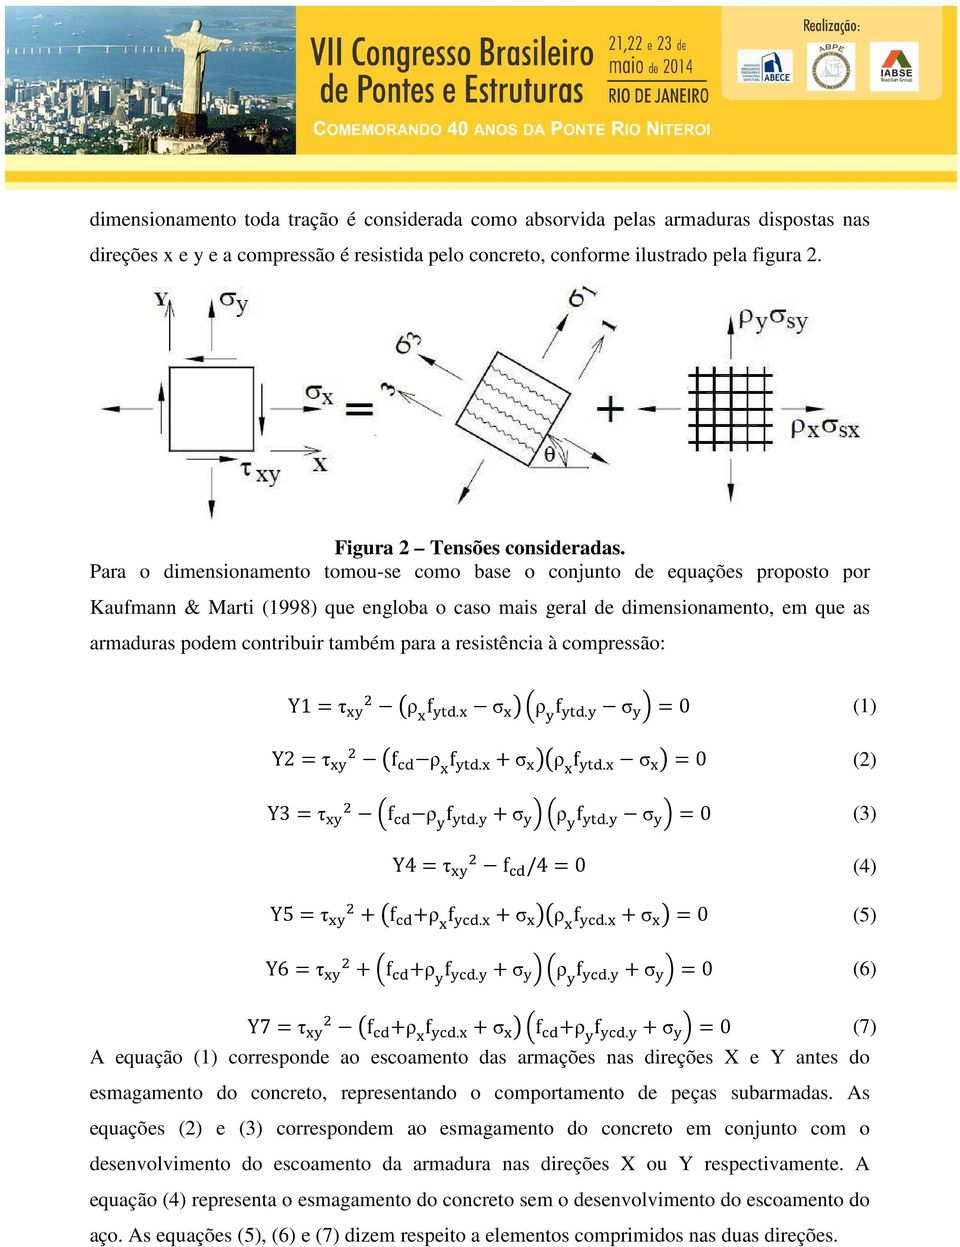 Para o dimensionamento tomou-se como base o conjunto de equações proposto por Kaufmann & Marti (1998) que engloba o caso mais geral de dimensionamento, em que as armaduras podem contribuir também